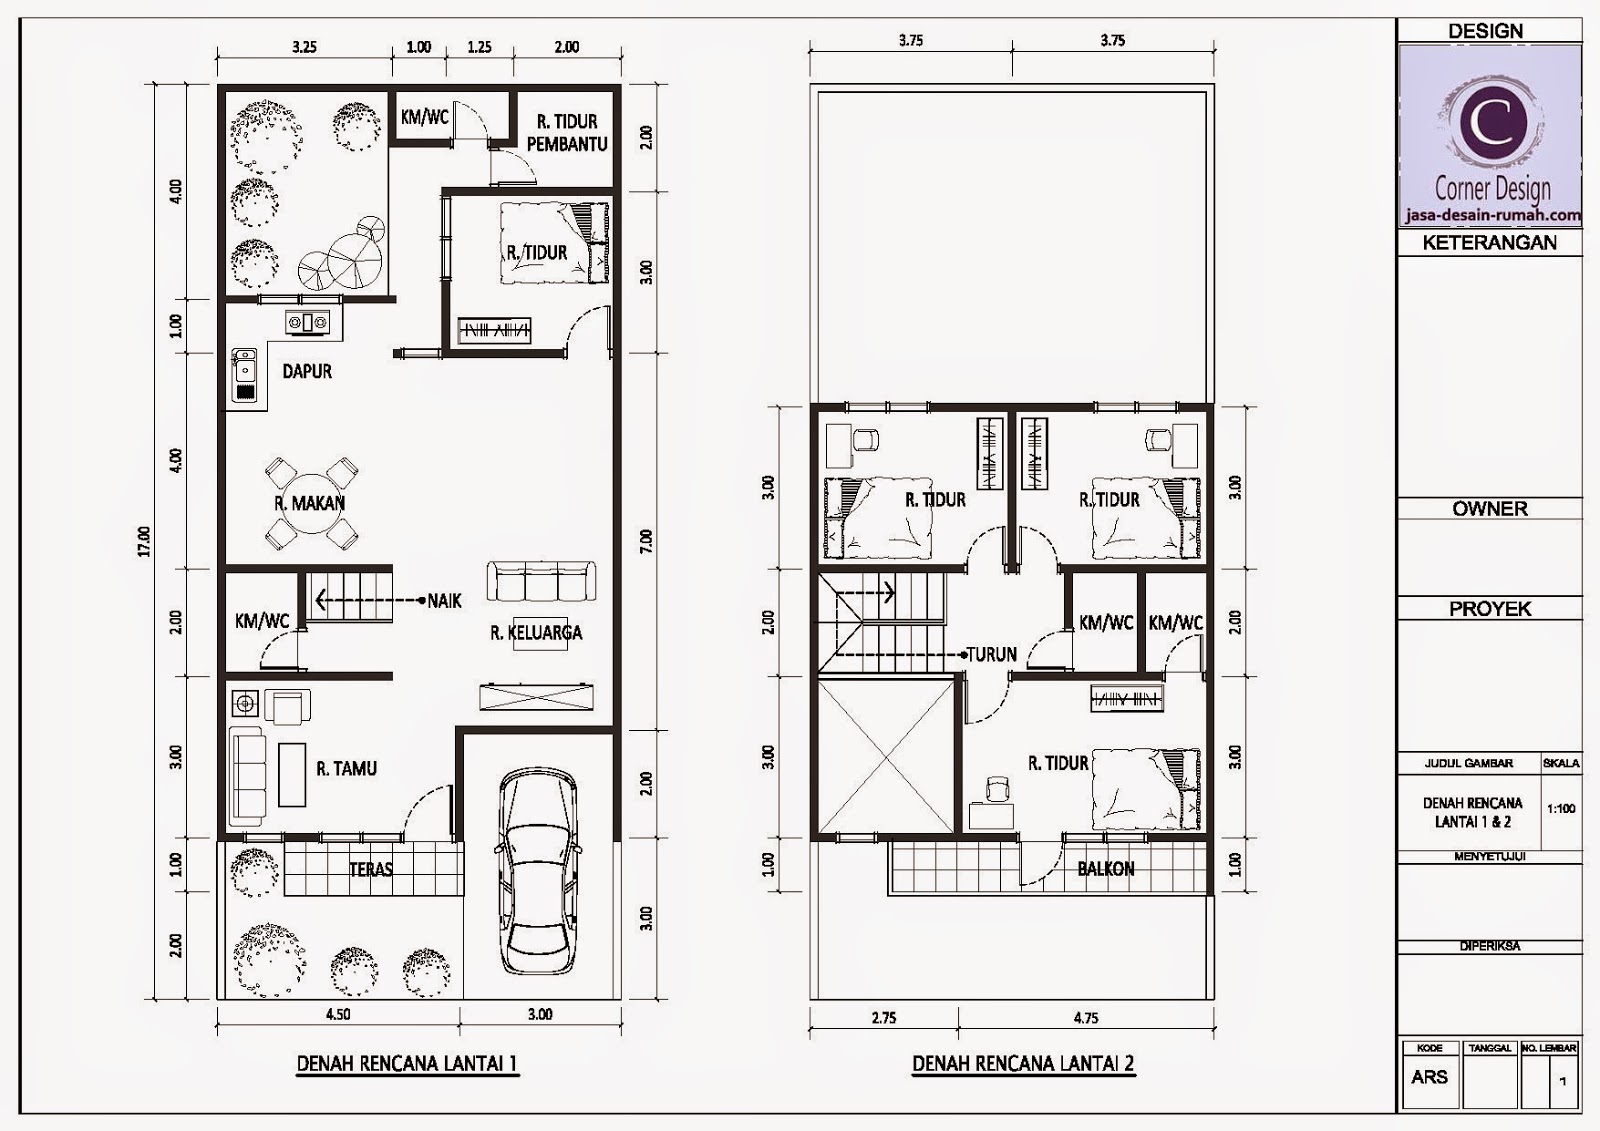  Denah  Rumah  Luas  Tanah 150 M2  design rumah  minimalis ask 